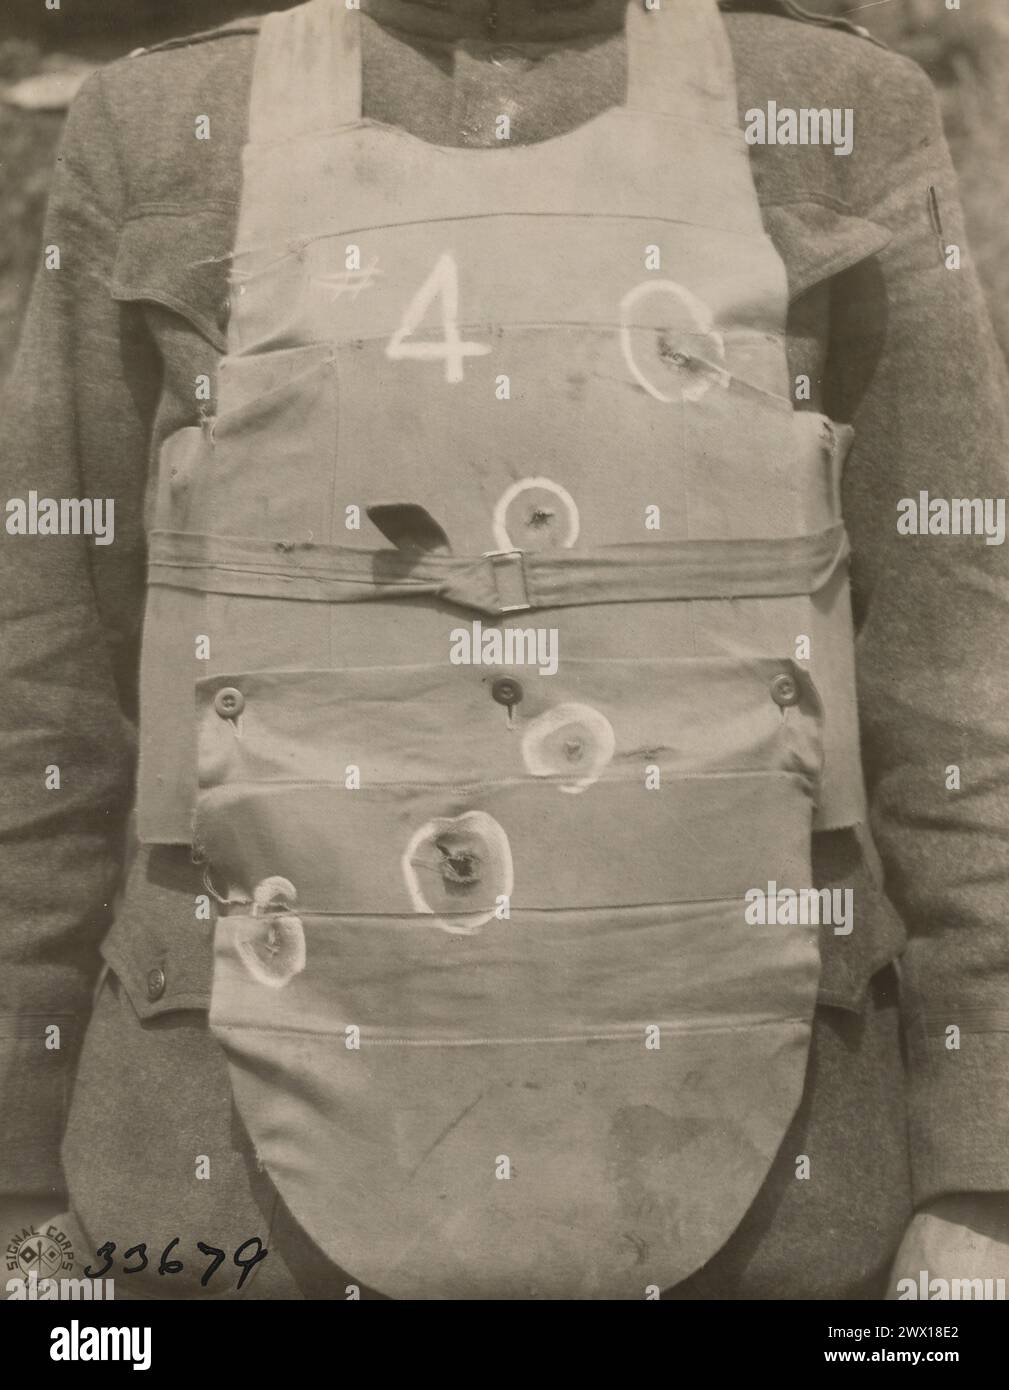 Résultat d'un essai de blindage corporel - poids léger 7 lbs 10 oz, pistolet calibre .45 tiré à 15 et 25 yards a entraîné des bosses jusqu'à 1/4 pouce, aucune pénétration env. 1918 Banque D'Images